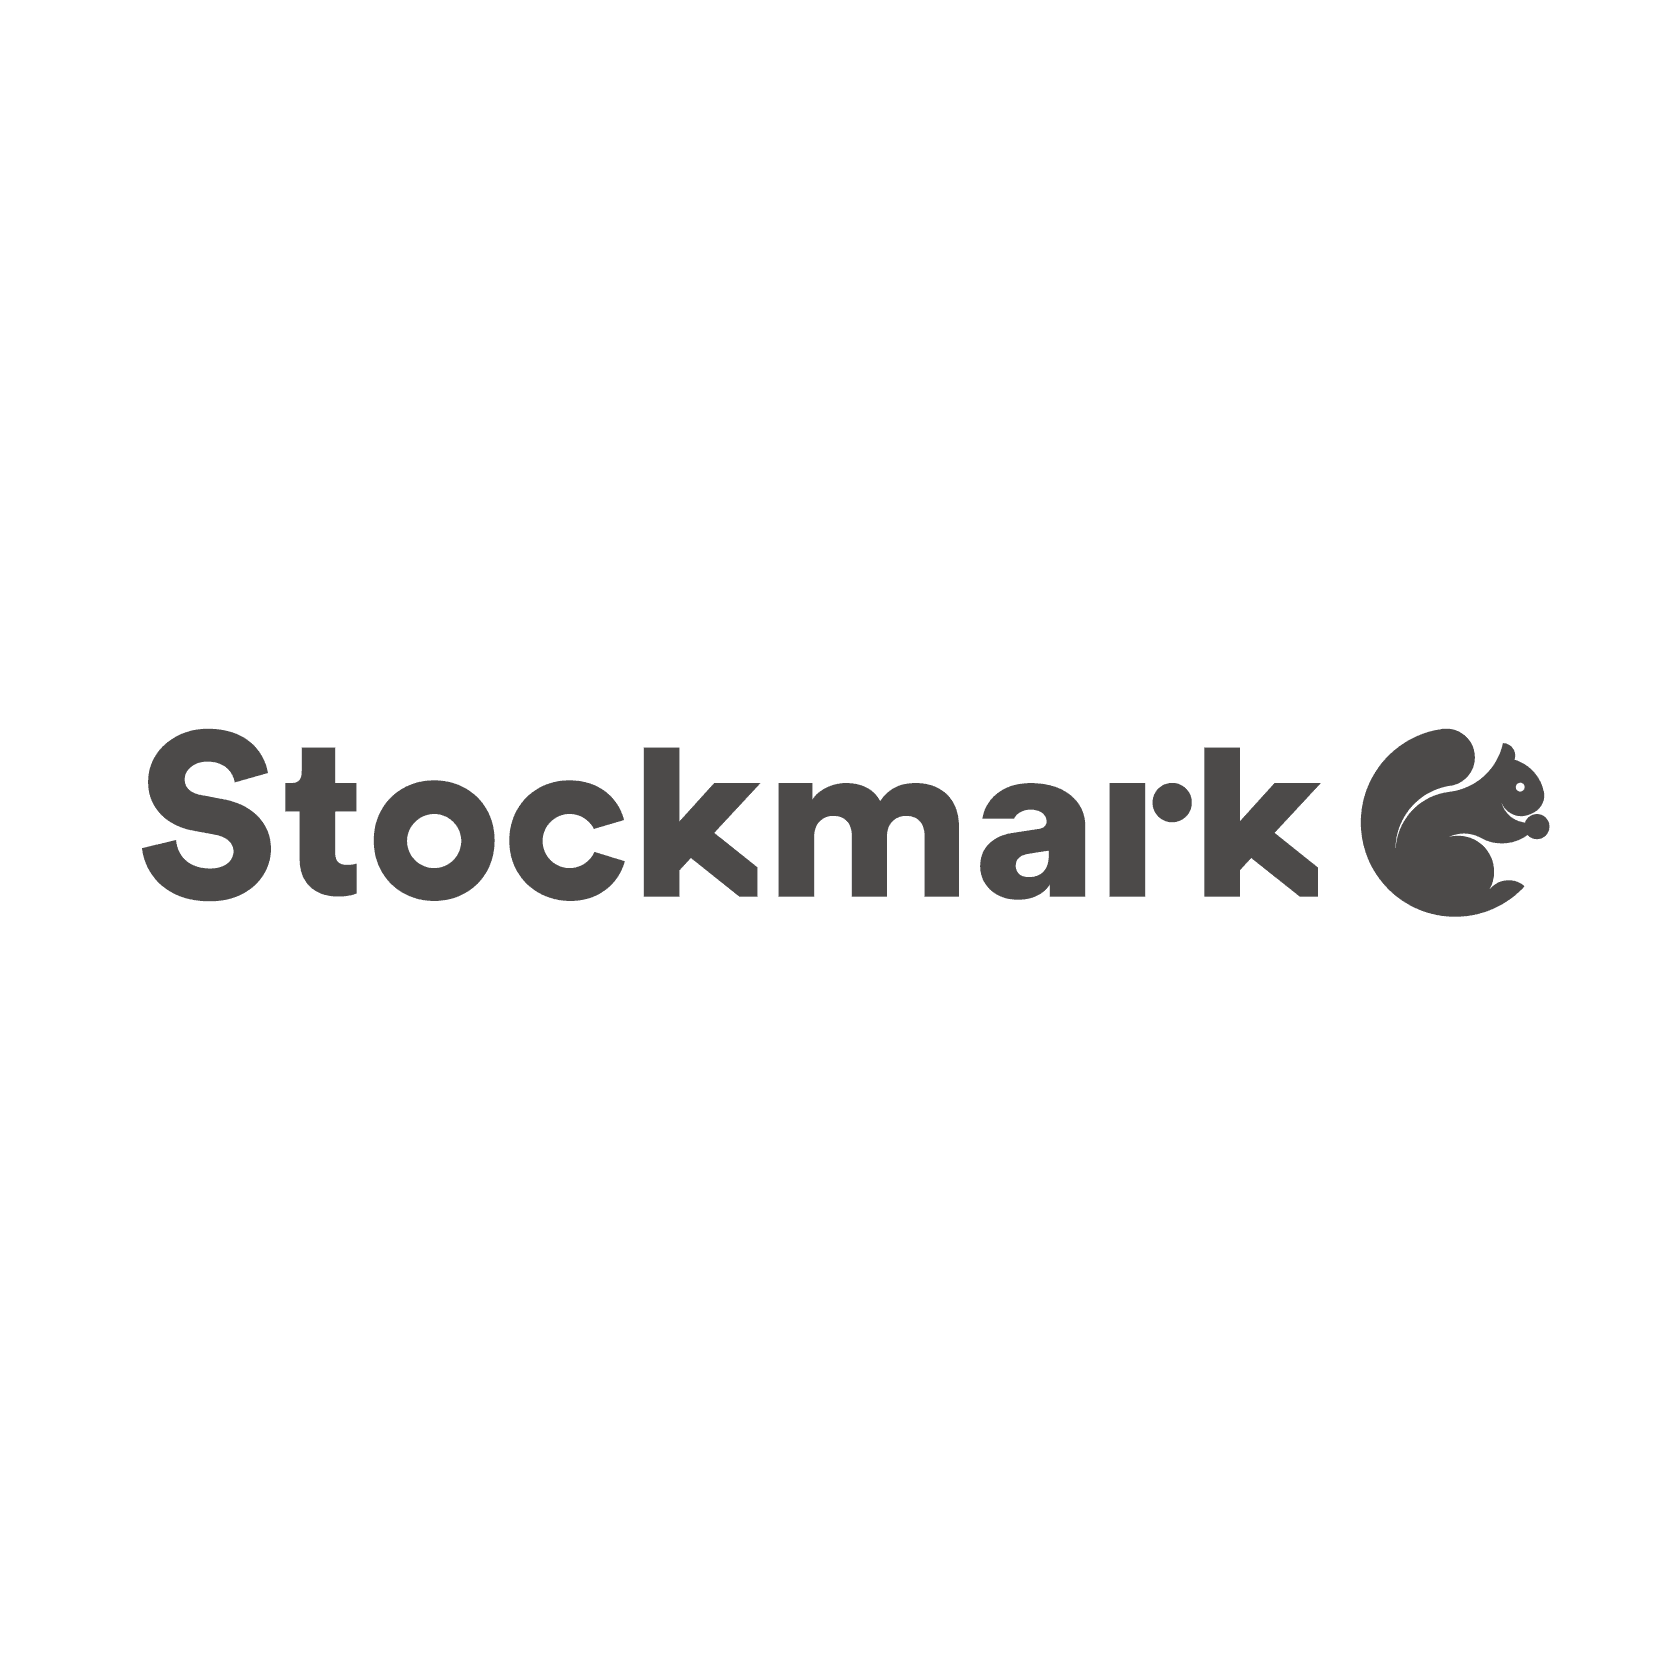 Stockmark / ストックマーク